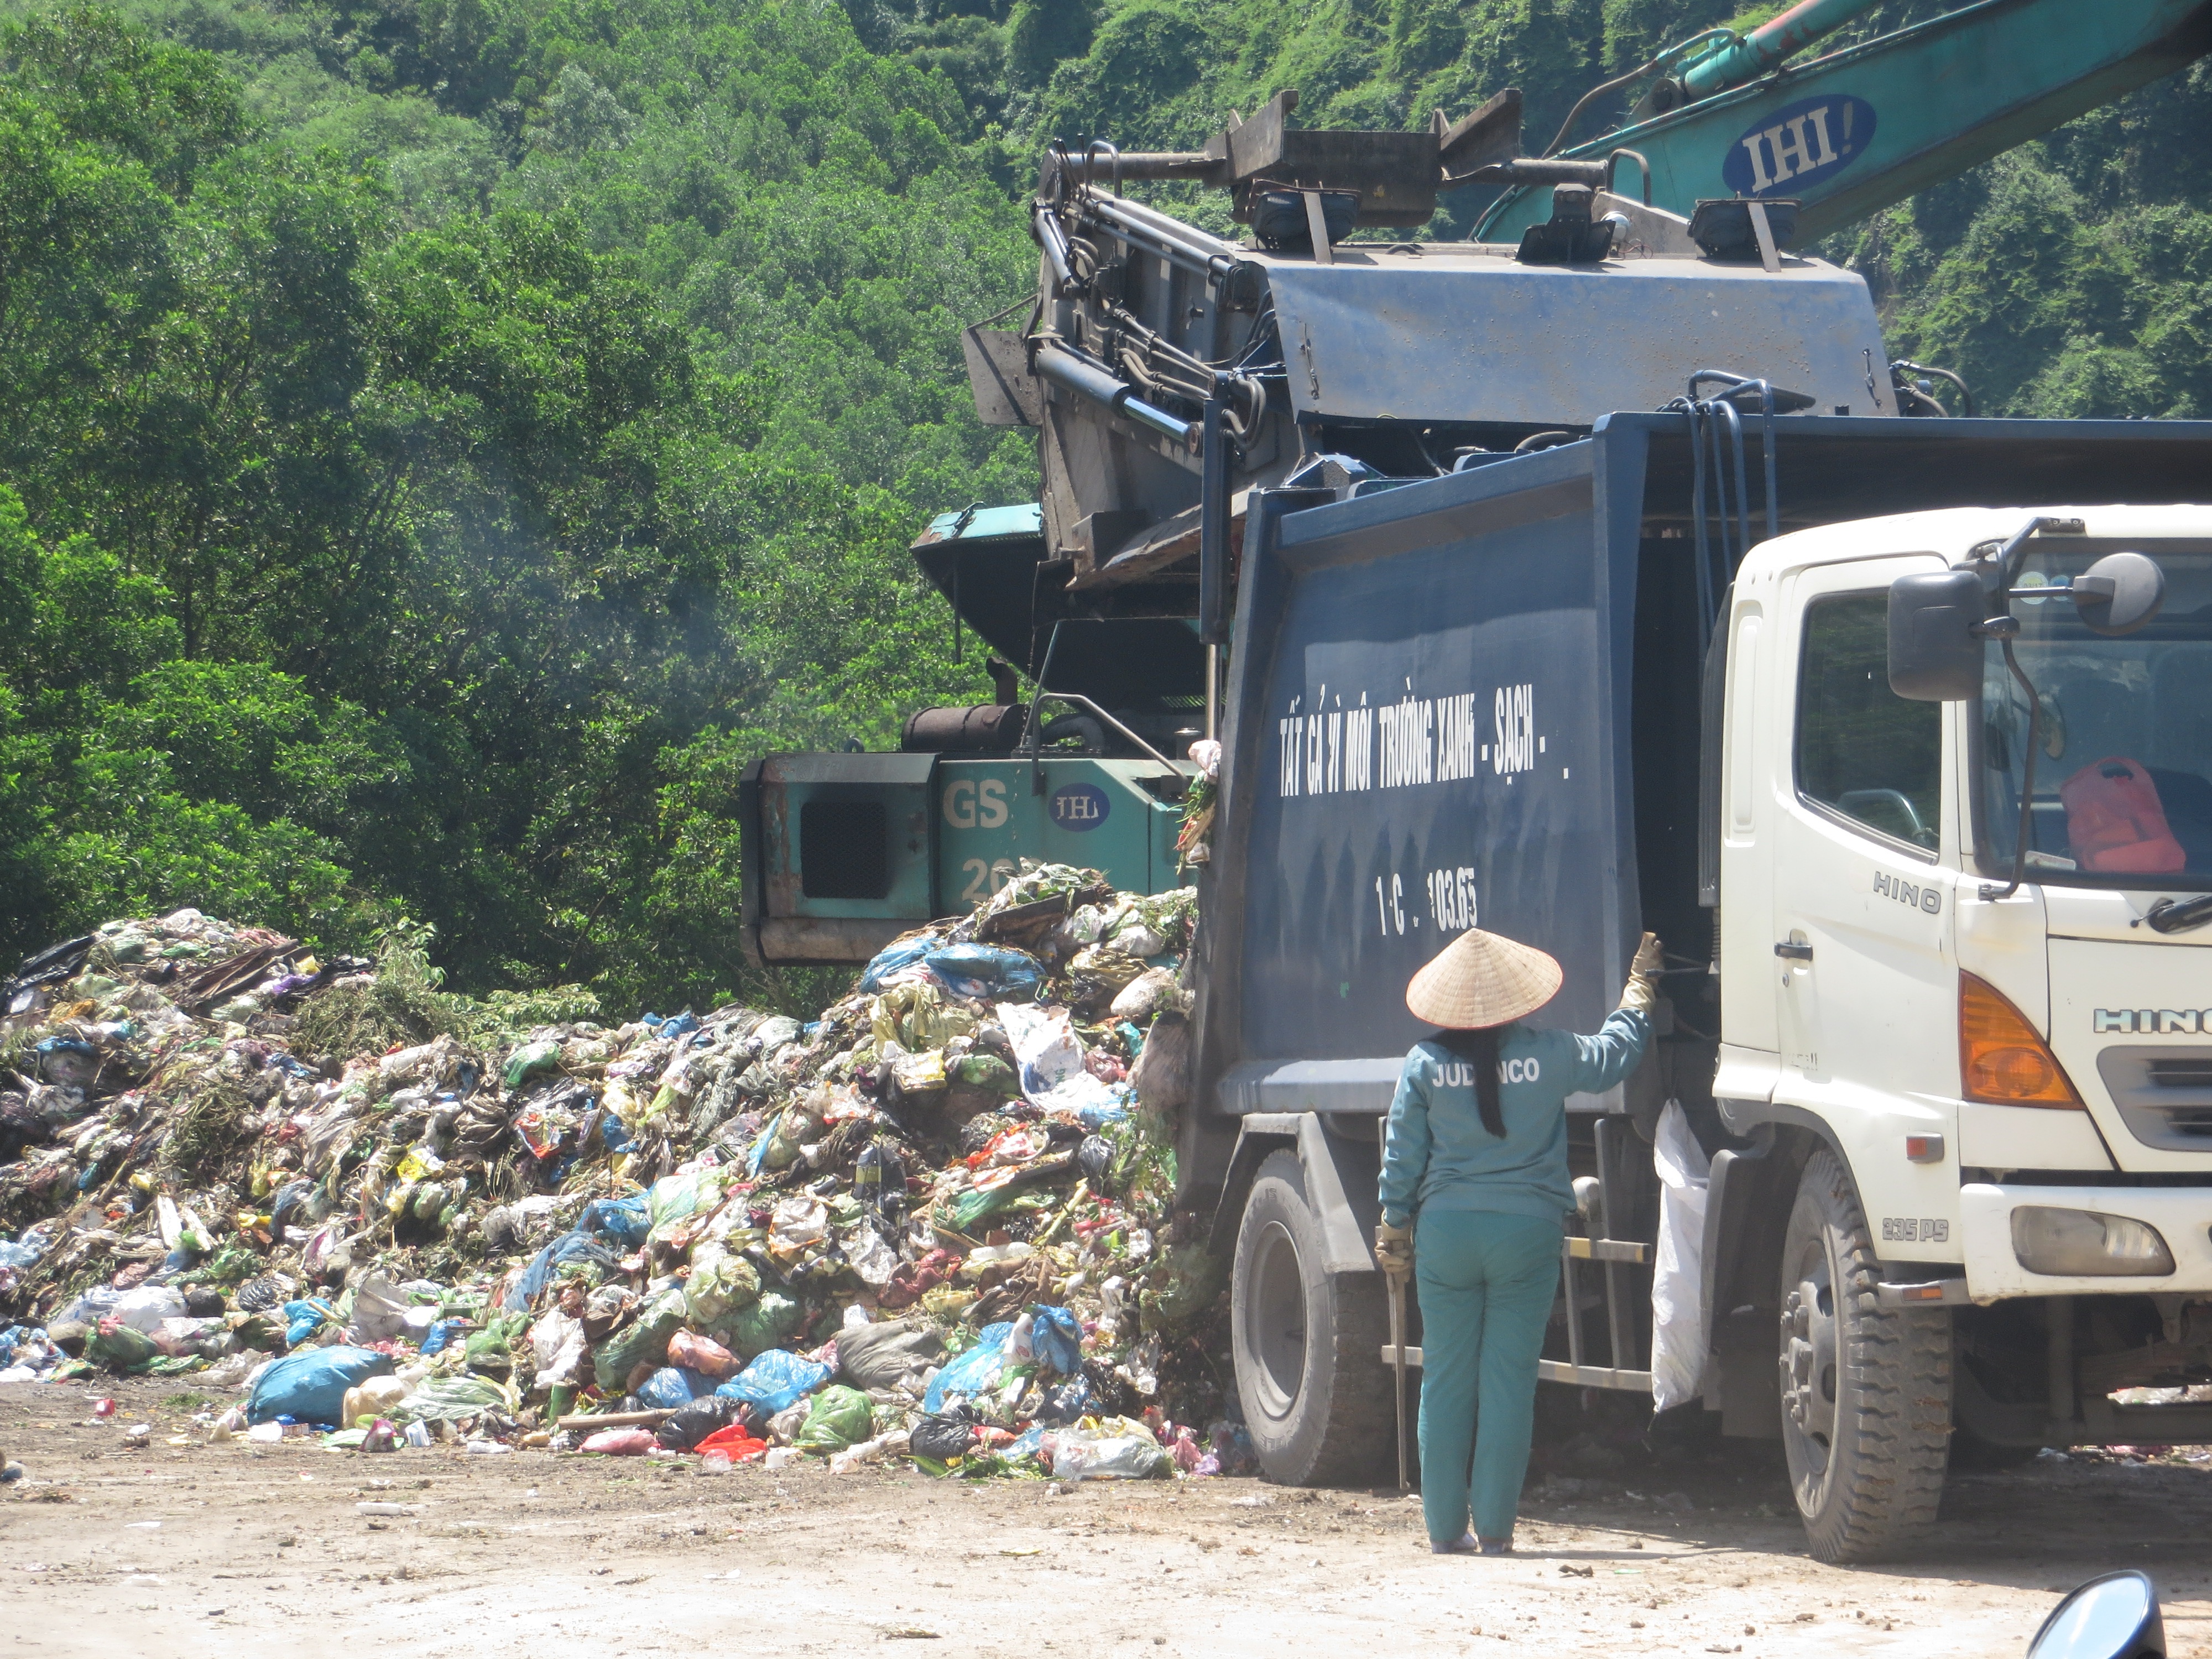 
Do quá tải, dùng công nghệ chôn lấp nên các bãi rác trên địa bàn tỉnh đã gây ô nhiễm môi trường nghiêm trọng
